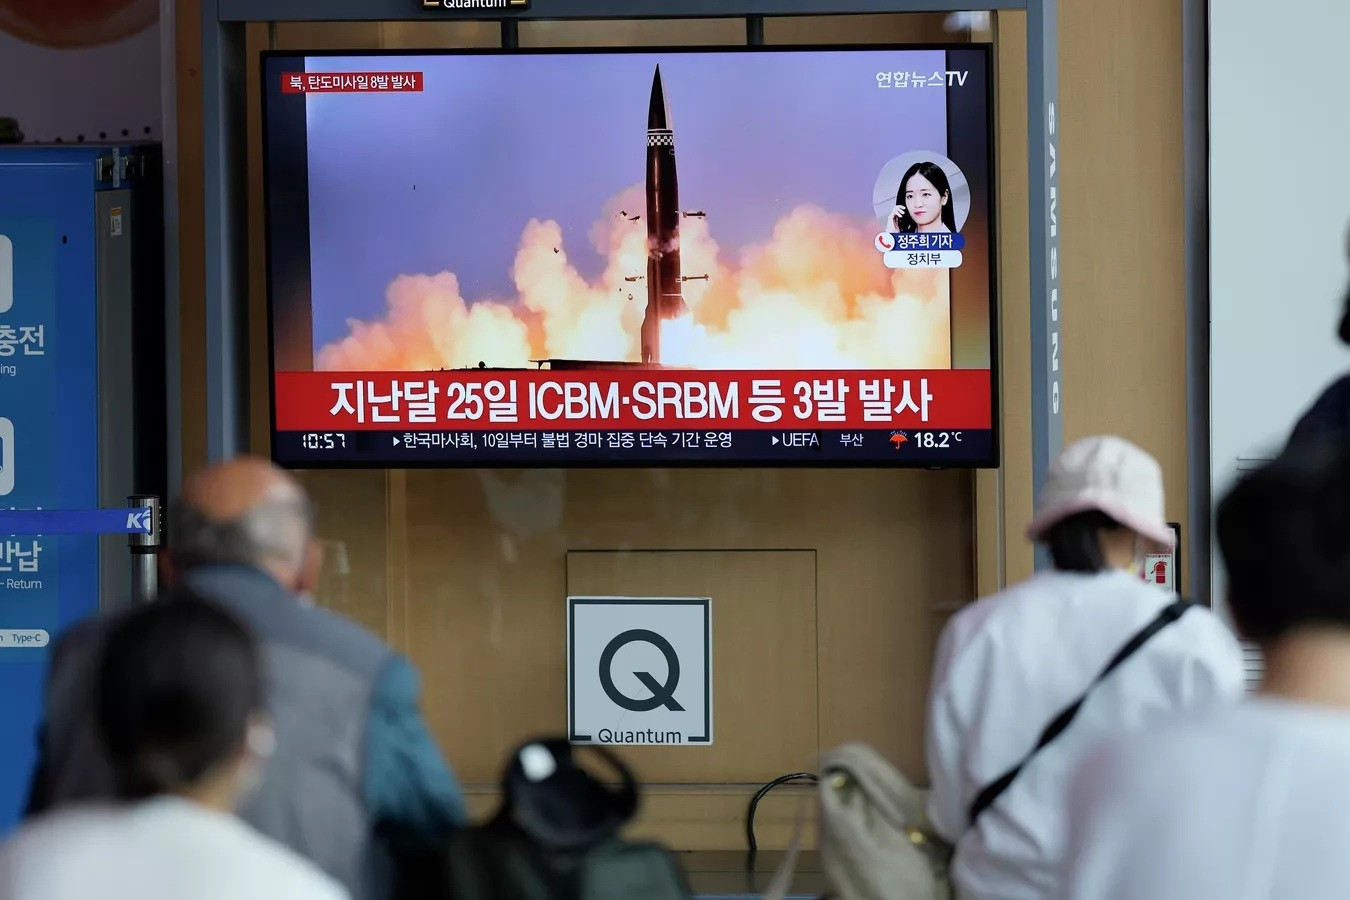 Triều Tiên phóng tên lửa đạn đạo không xác định